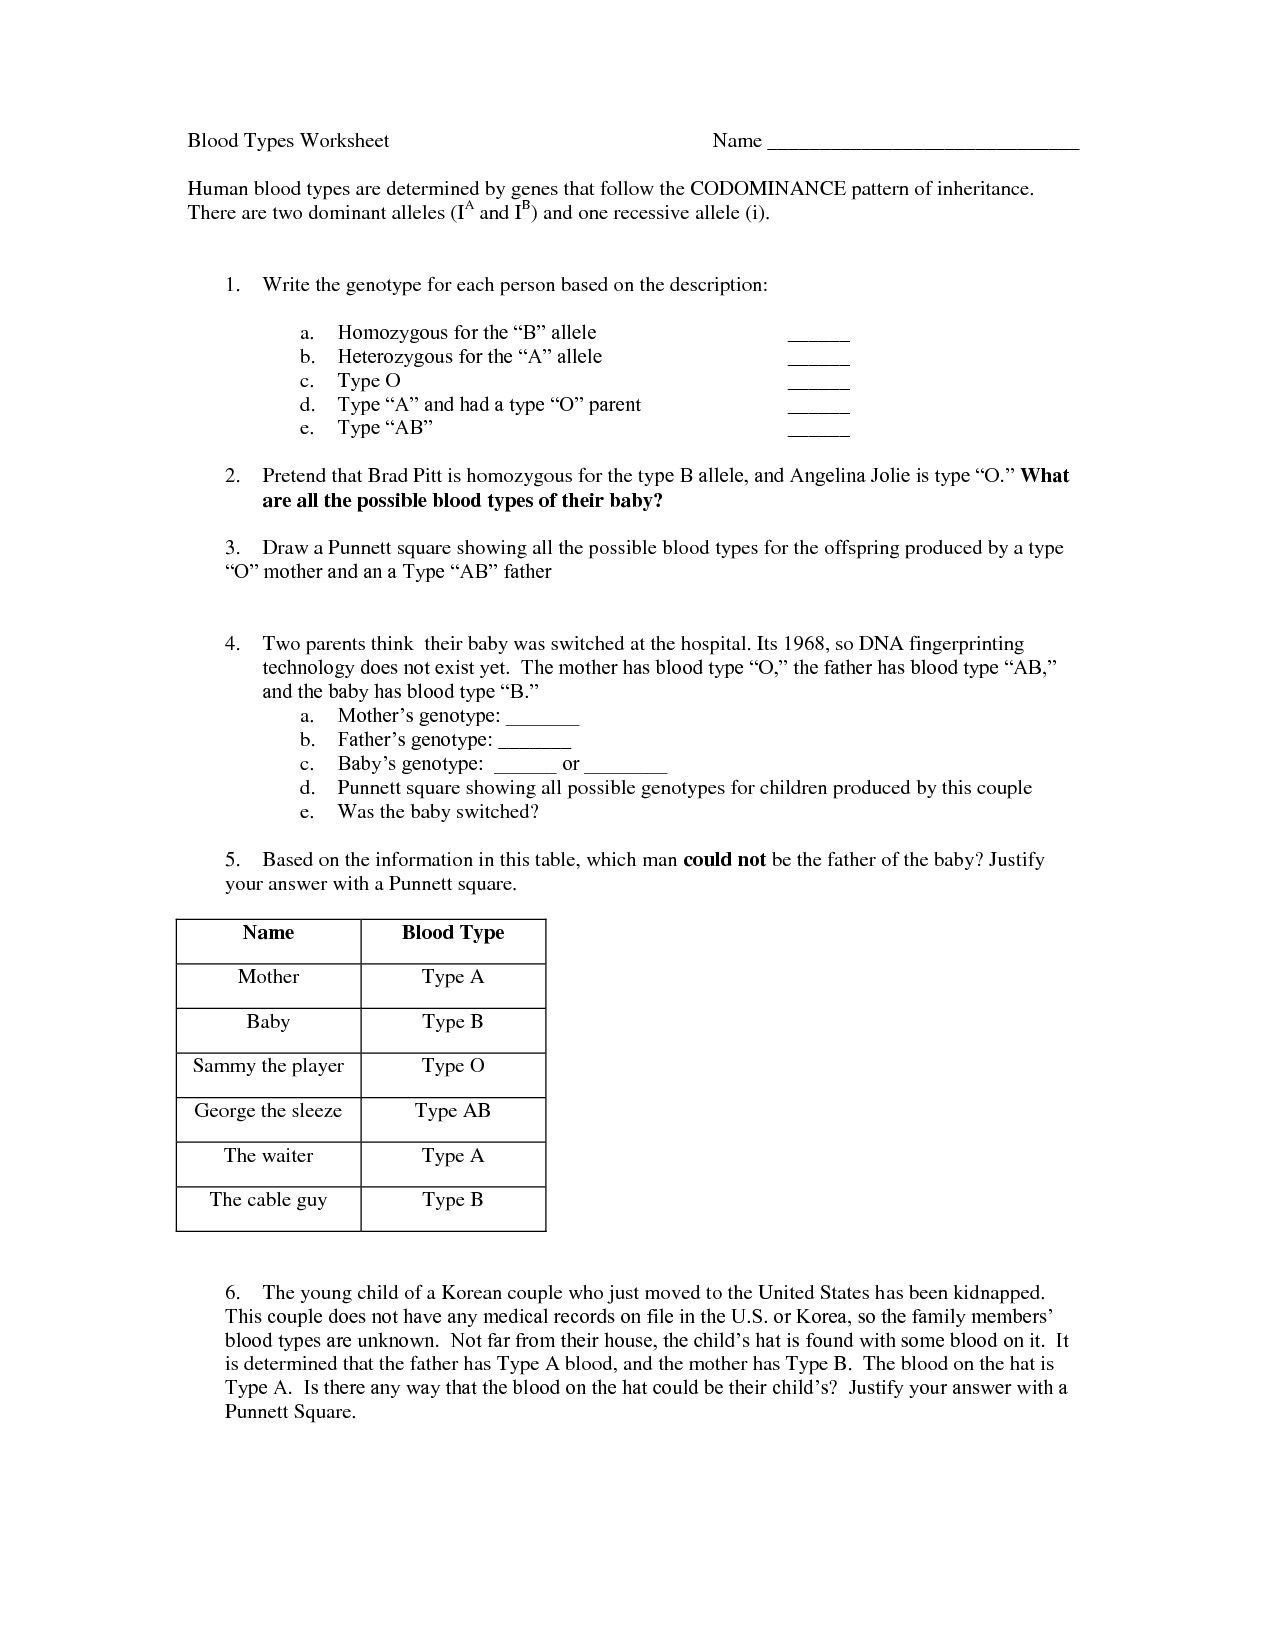 Genetics Pedigree Worksheet Answers Basic Pedigree Worksheet